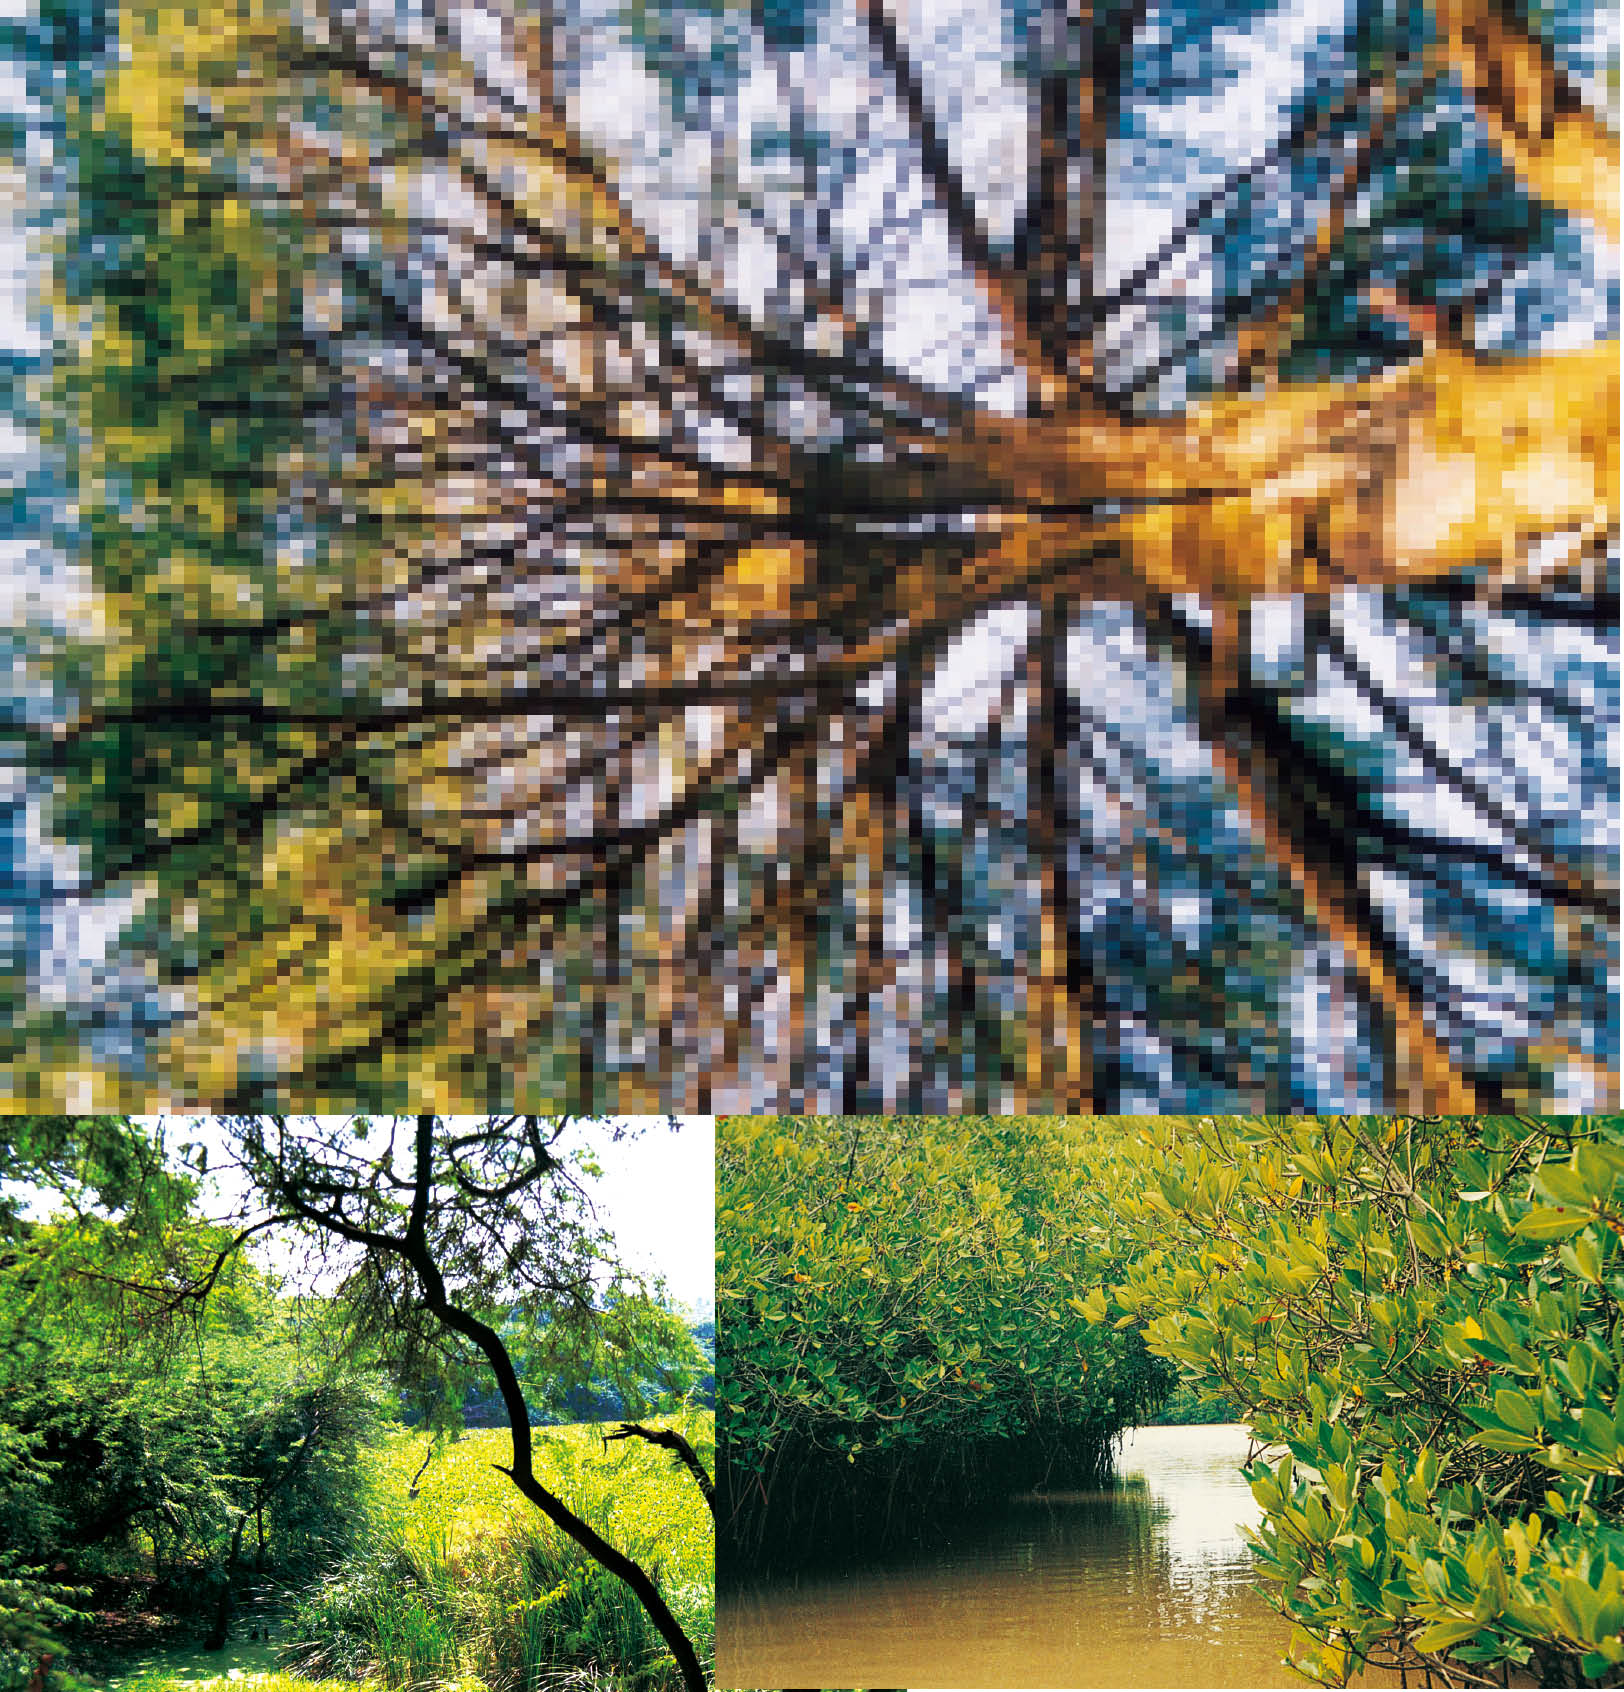 Tree Cover in India: Present Scenario